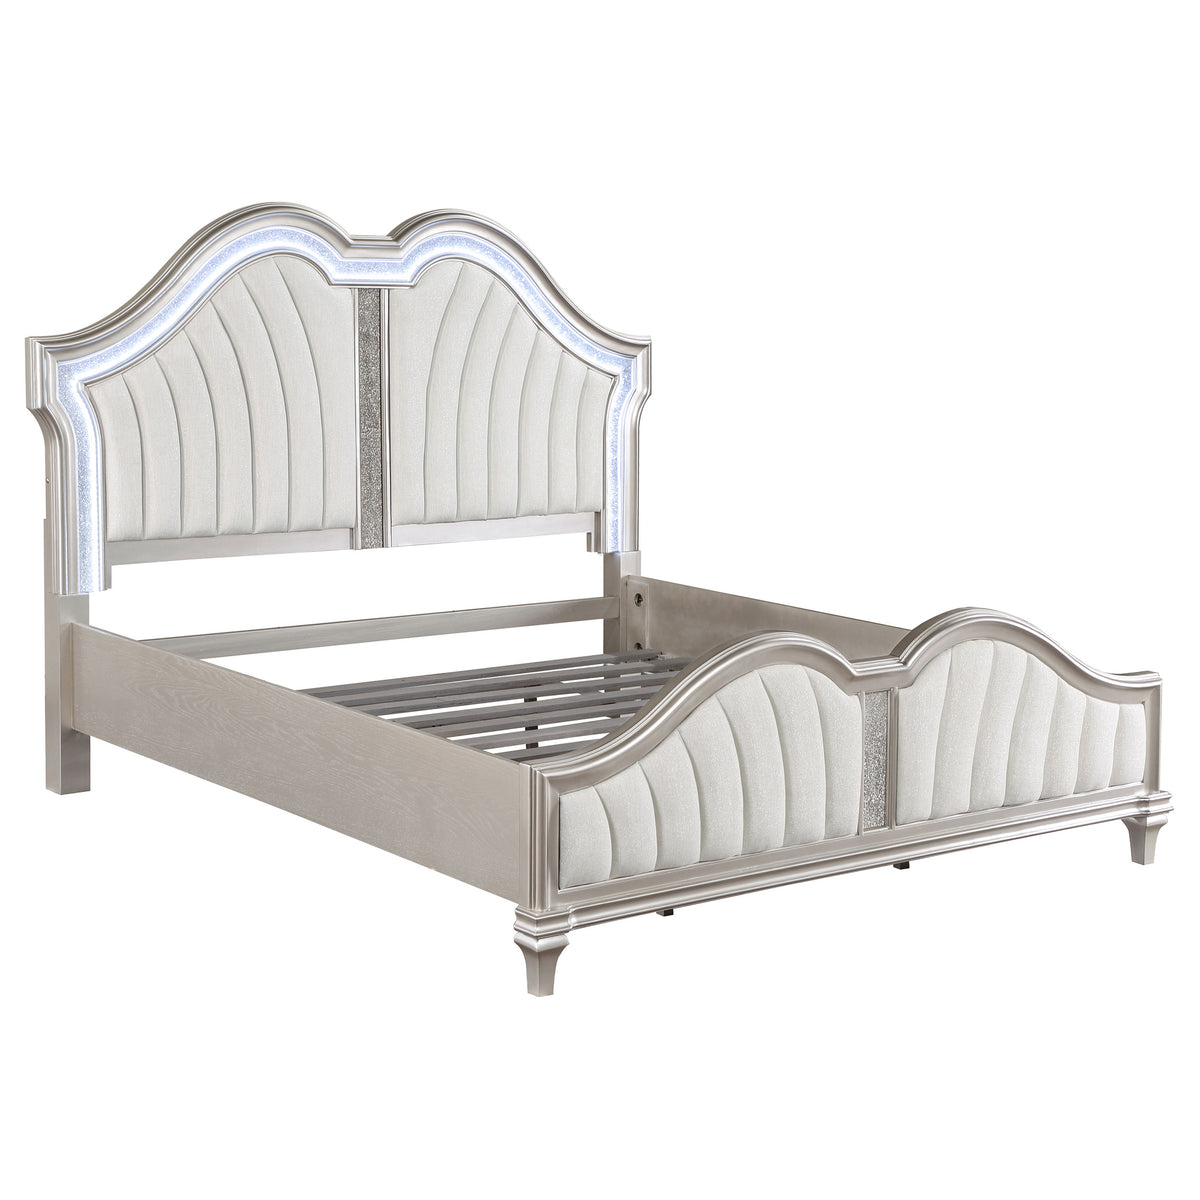 Evangeline Tufted Upholstered Platform Bed Ivory and Silver Oak - Half Price Furniture